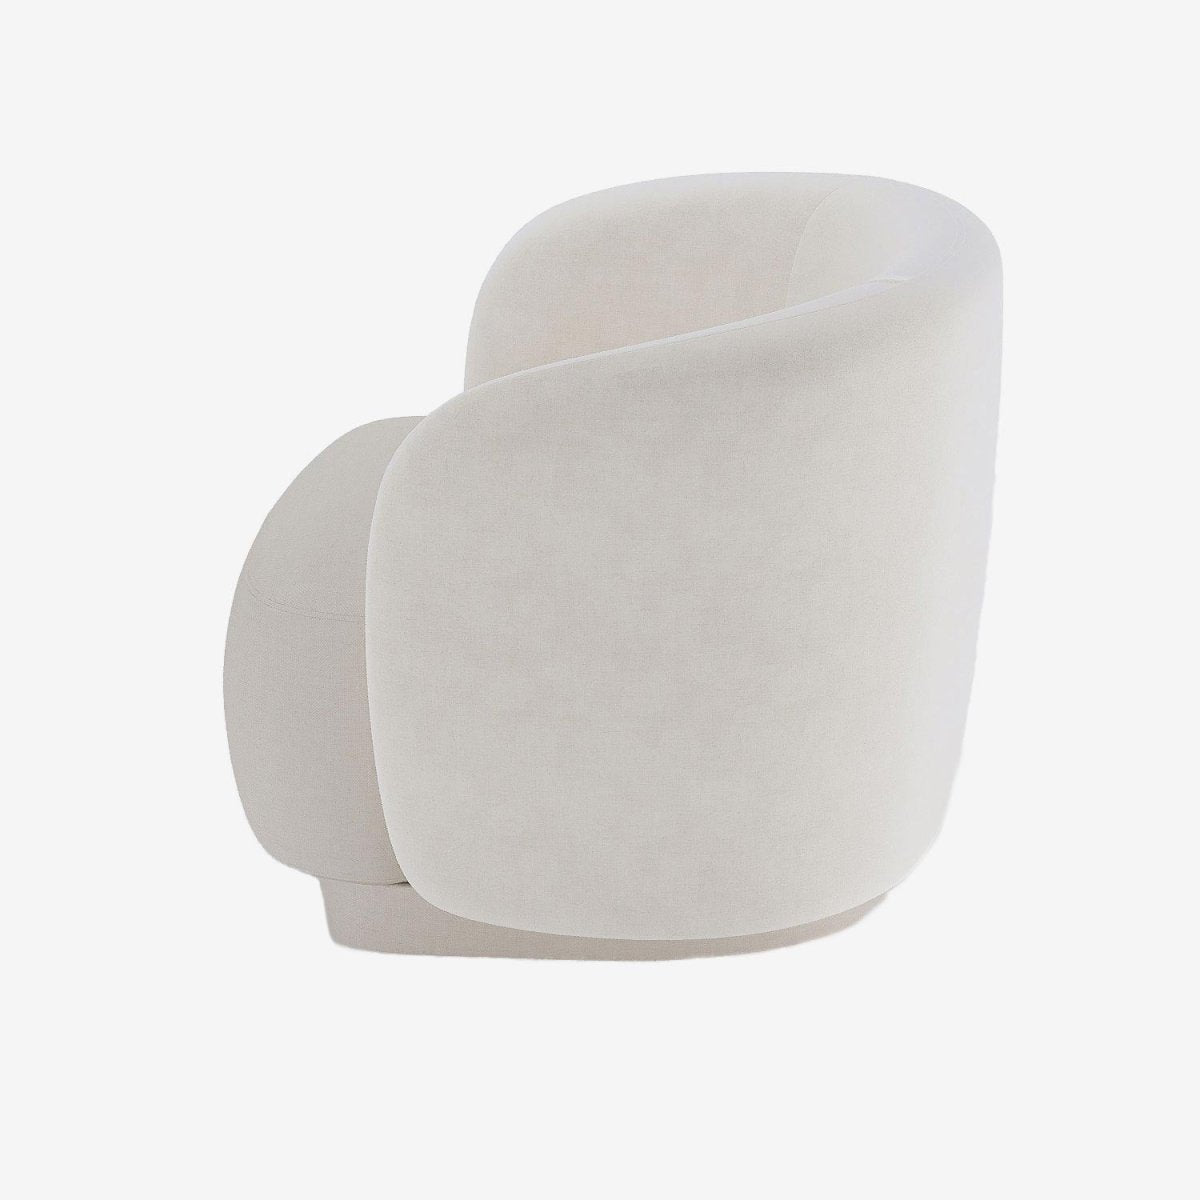 Fauteuil beige scandinave - Potiron Paris, la satisfaction du fauteuil design et confortable pas cher